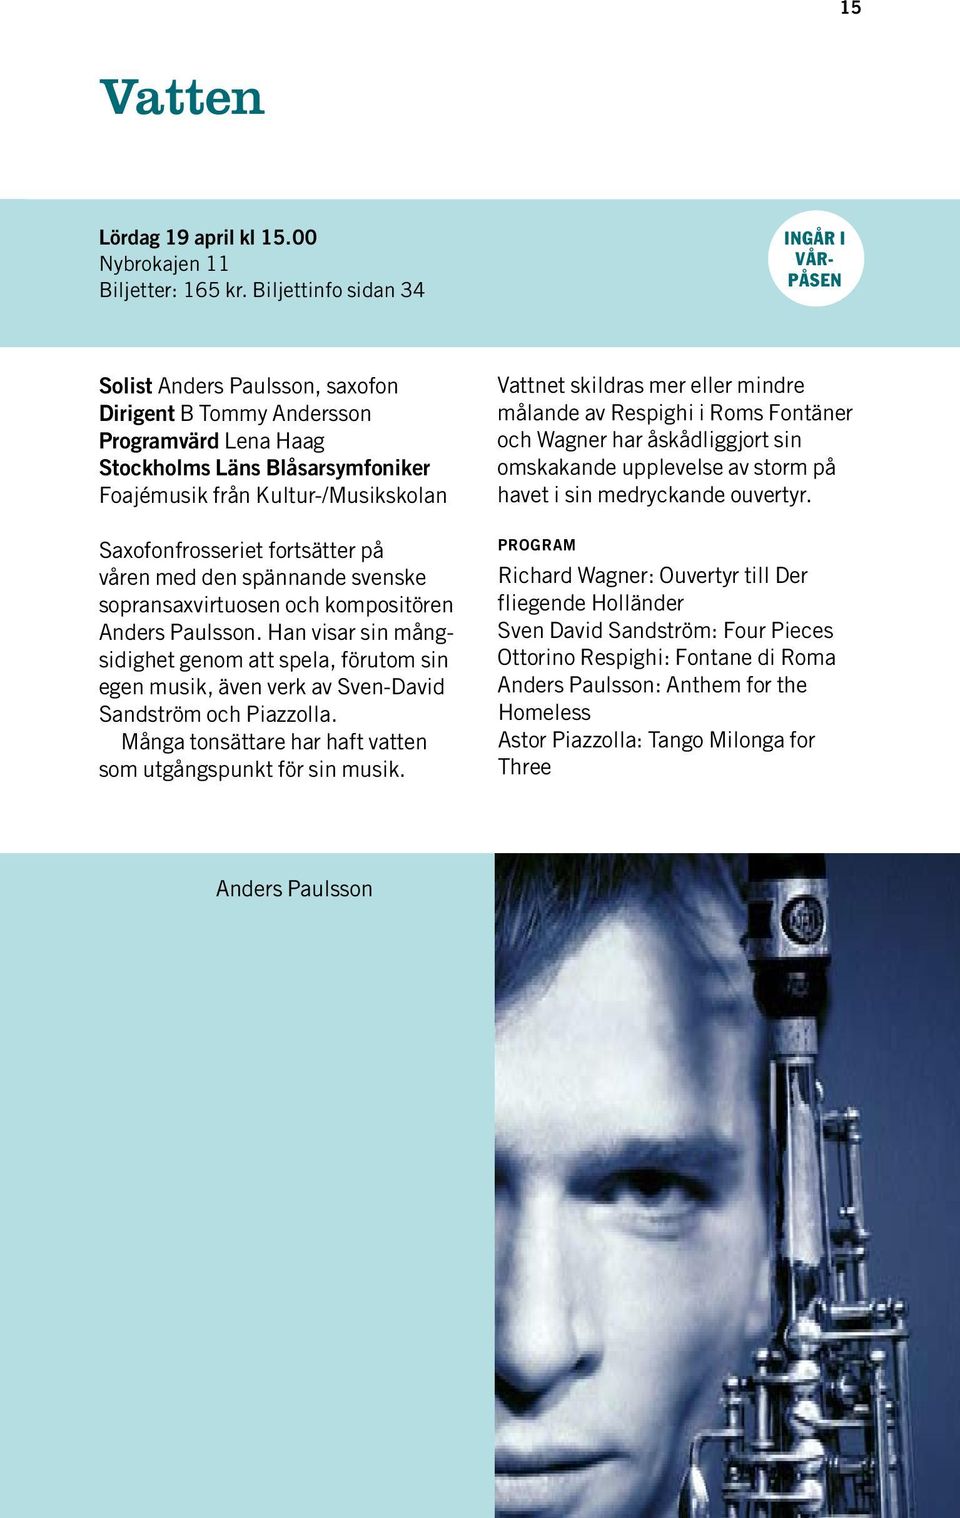 Saxofonfrosseriet fortsätter på våren med den spännande svenske sopransaxvirtuosen och kompositören Anders Paulsson.